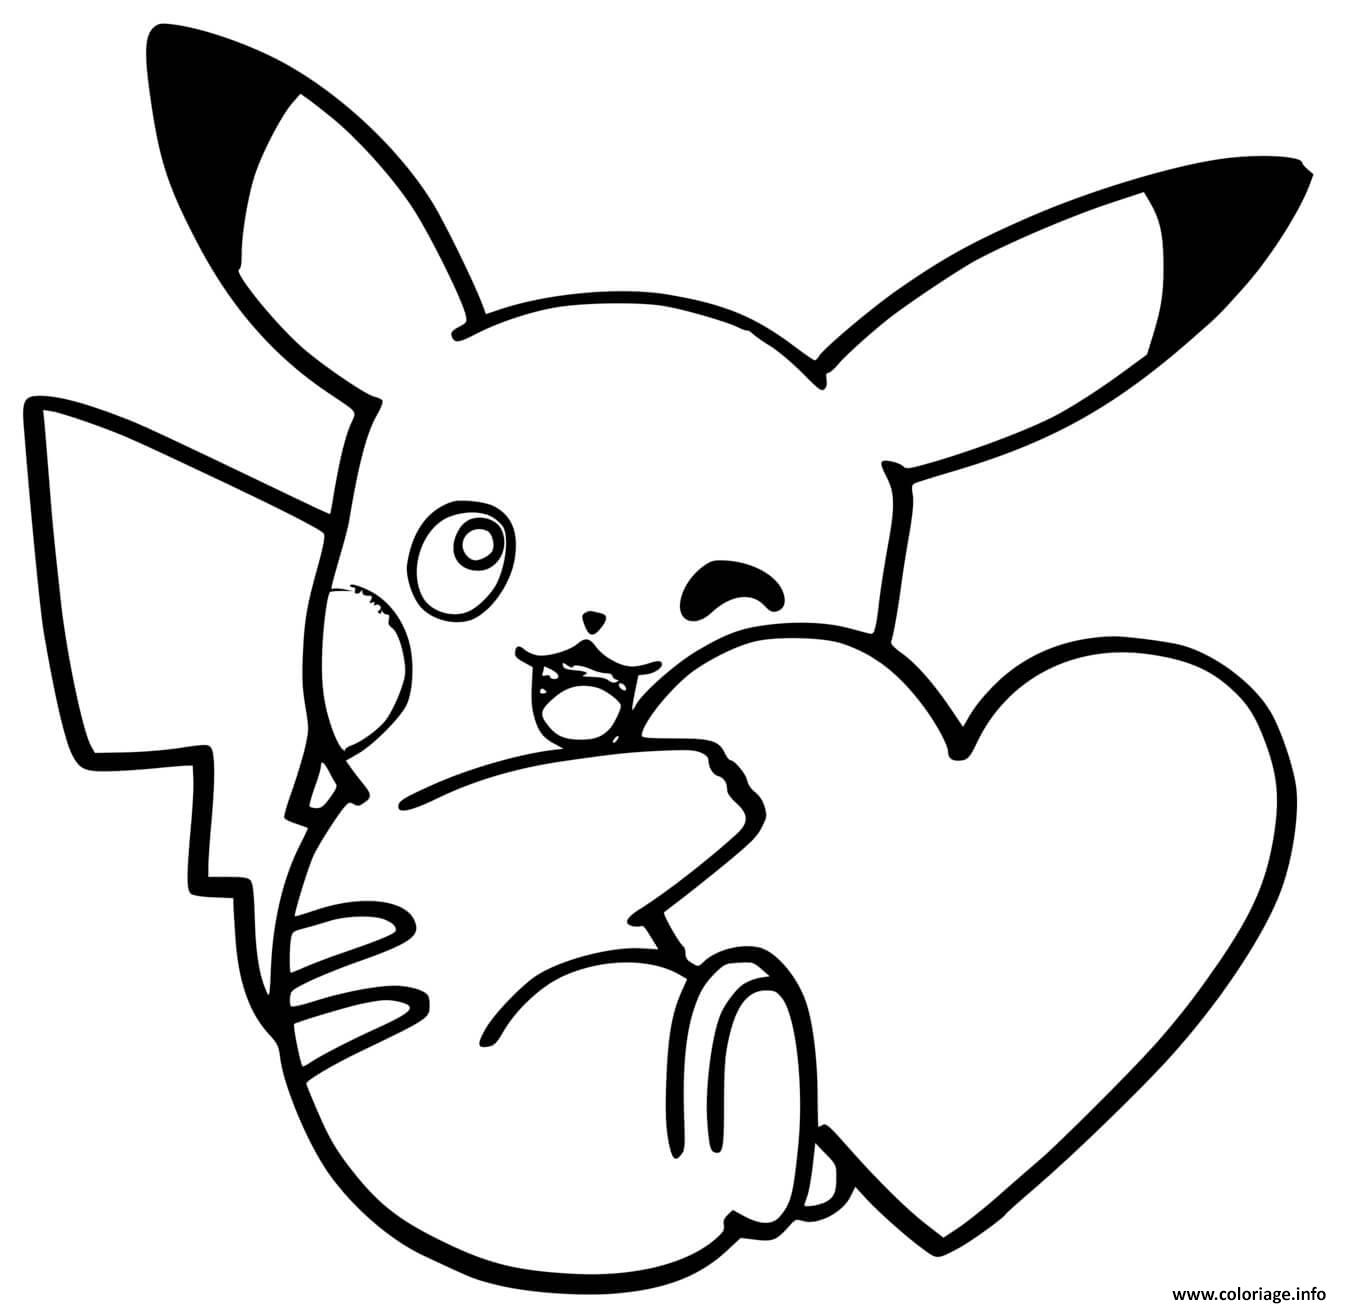 Coloriage pikachu mignon avec un coeur  JeColorie.com